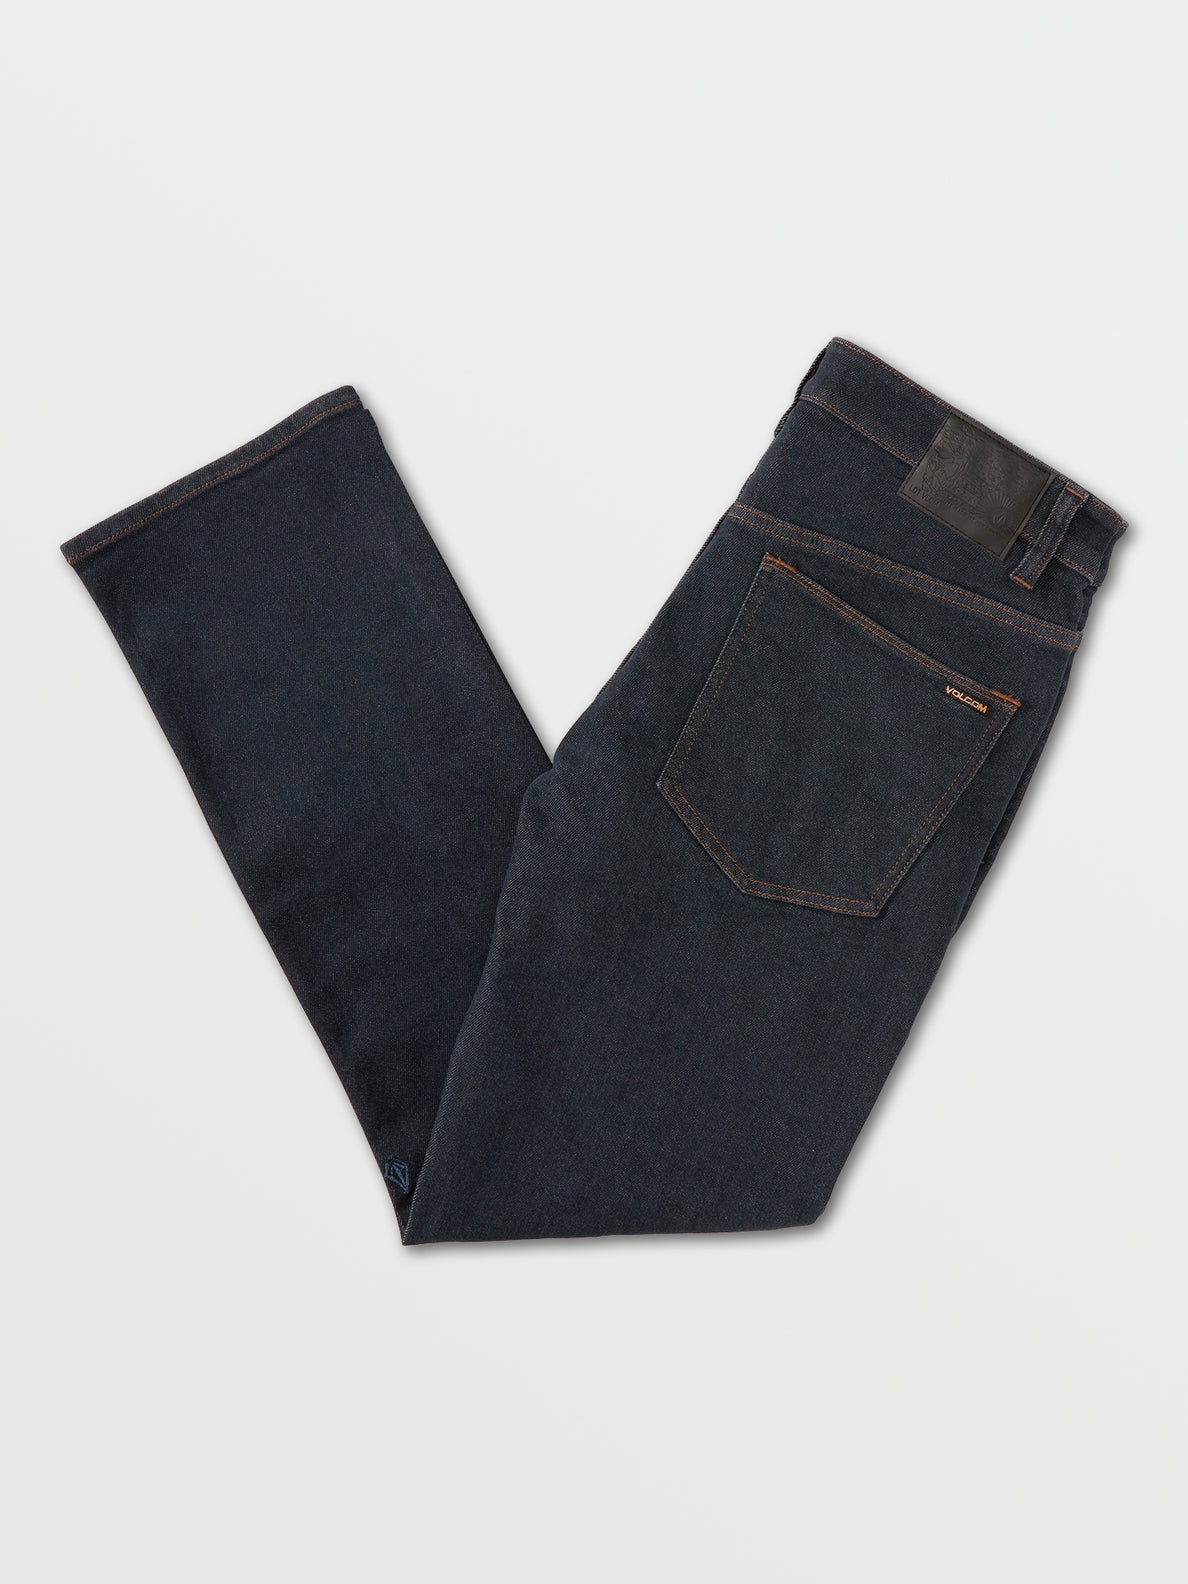 Solver Modern Fit Jeans - Grey Indigo Rinse (A1931503_GIR) [B]